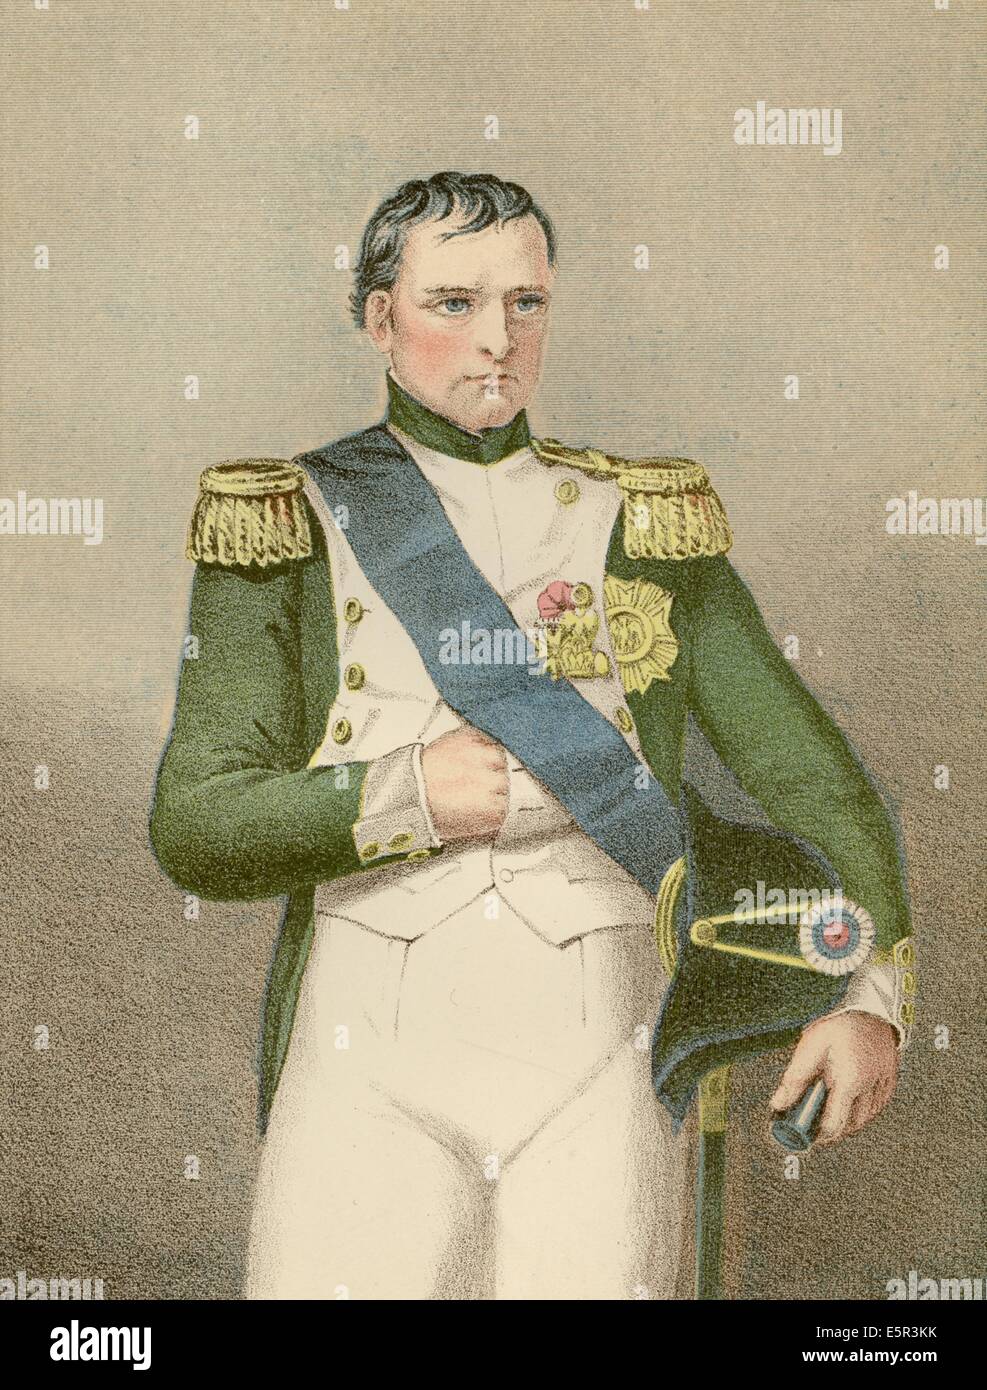 Retrato de Napoleón Bonaparte, emperador de Francia Foto de stock